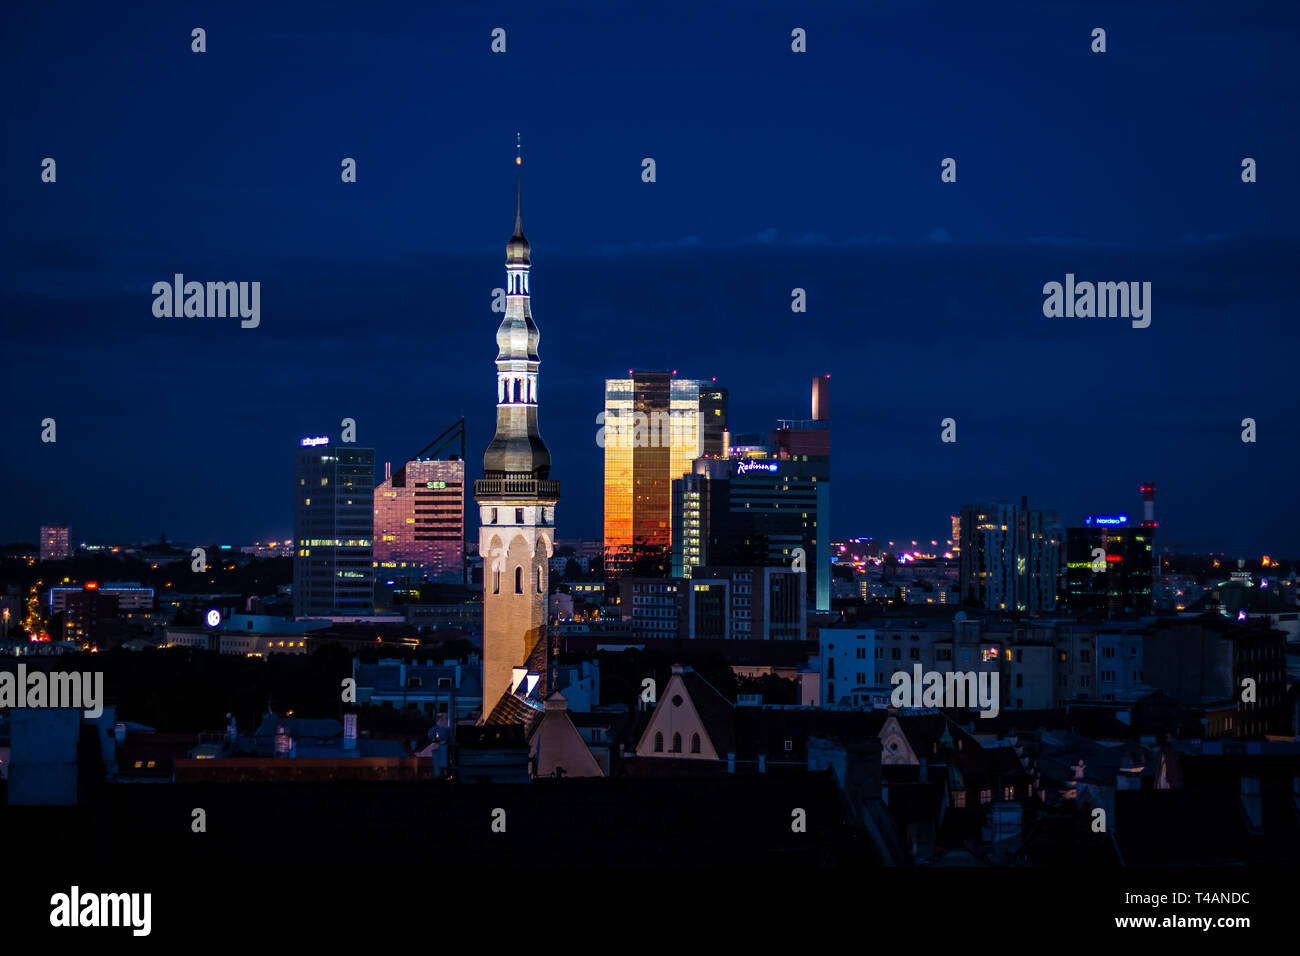 Nuit paysage urbain de Tallinn, Estonie, les bâtiments médiévaux et modernes avec éclairage Banque D'Images